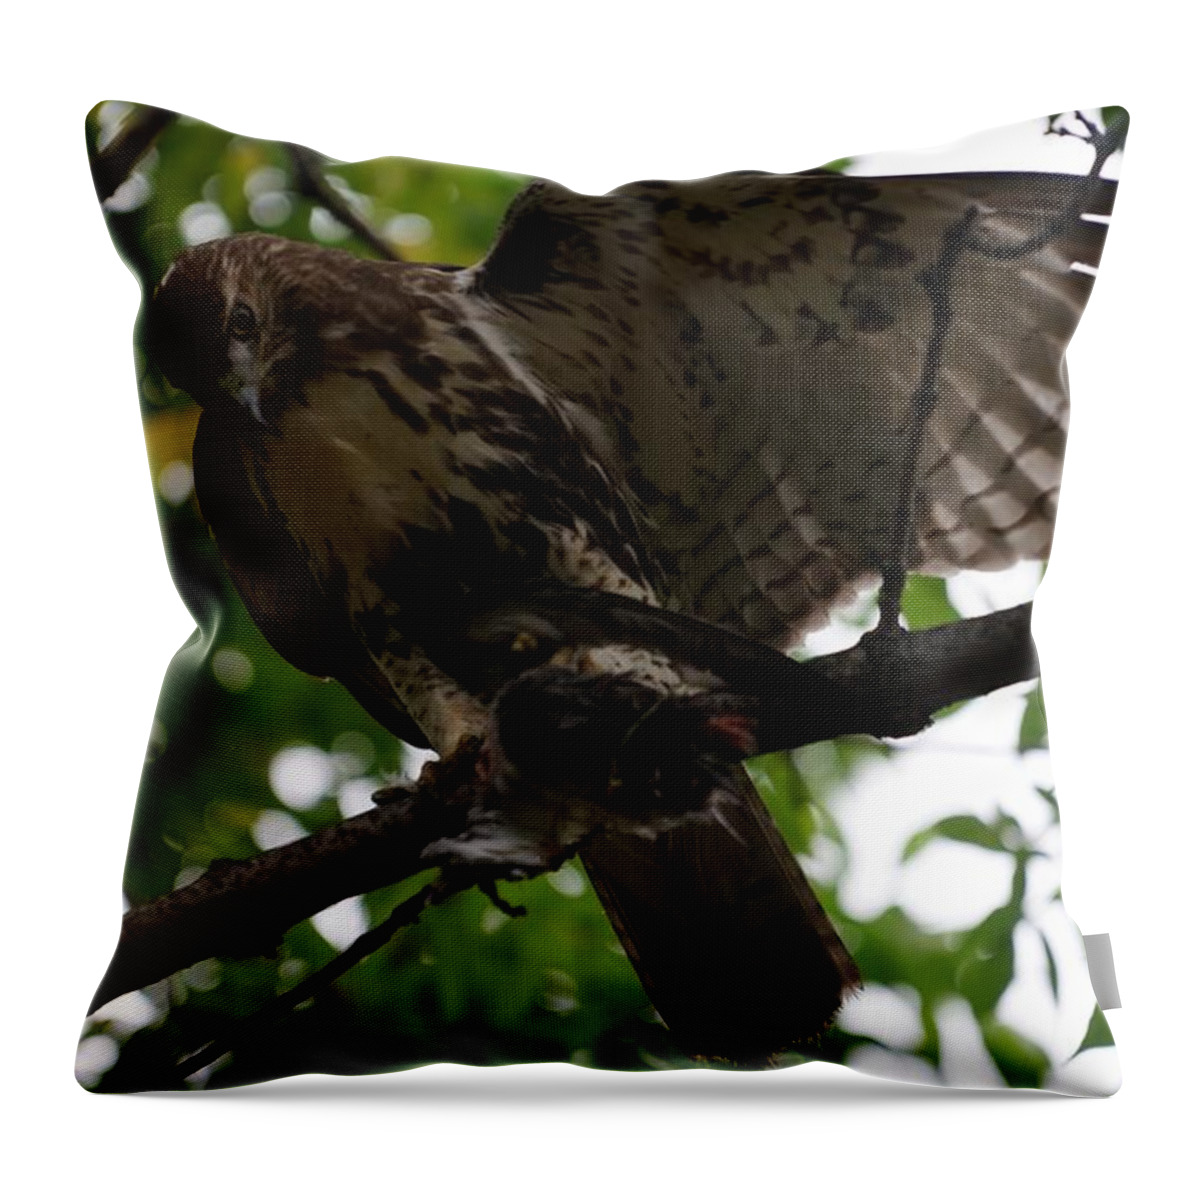  Throw Pillow featuring the photograph Hawks Ballanced Diet by Brooke Bowdren